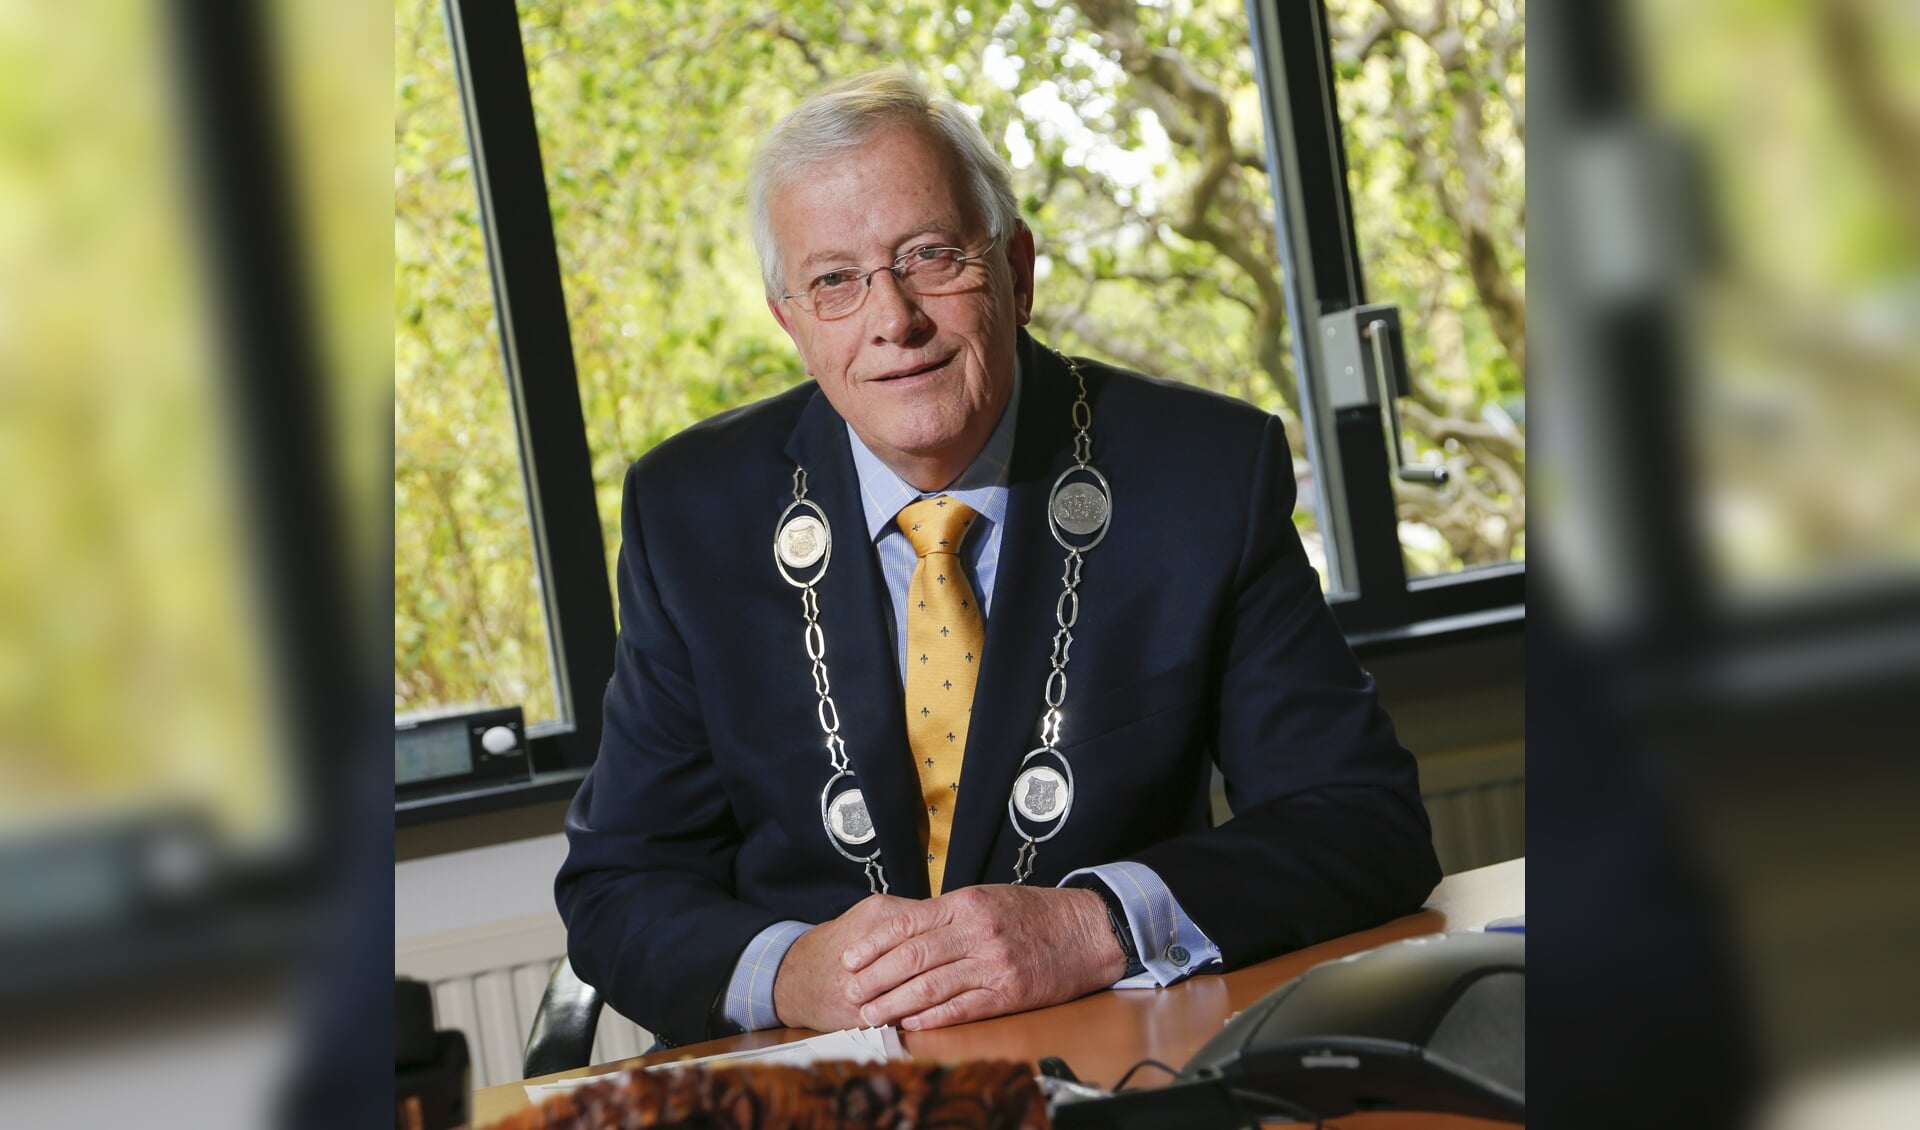 Burgemeester Nijpels; een échte en warme burgervader voor de inwoners van de gemeente Opmeer.